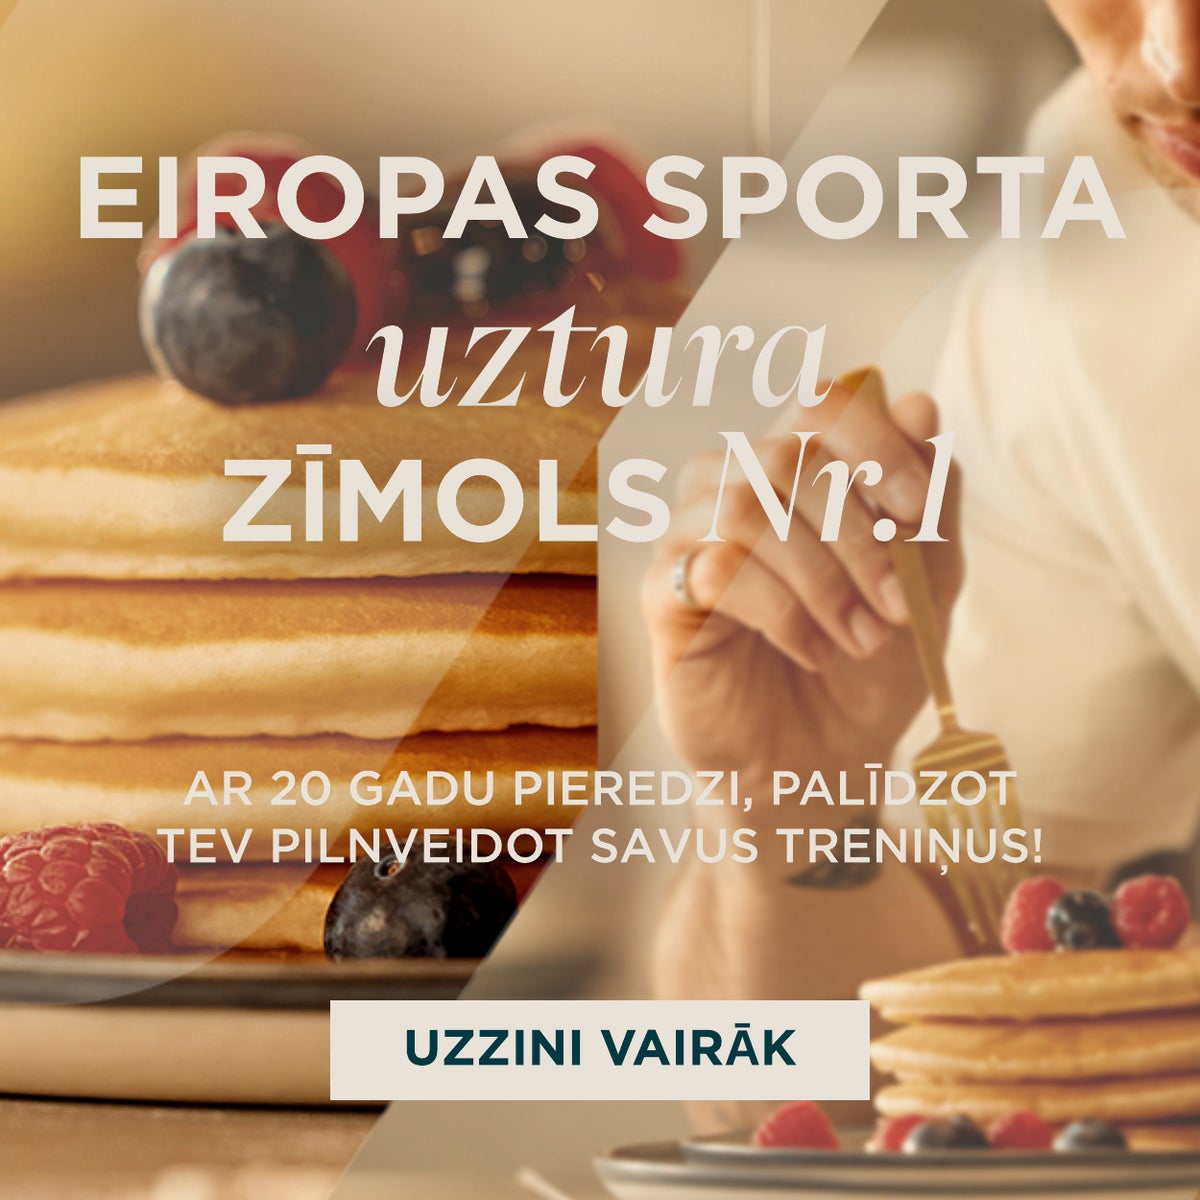 Eiropas sporta uztura zīmols nr. 1. Ar 20 gadu pieredzi, palīdzot Tev pilnveidot savus treniņus!